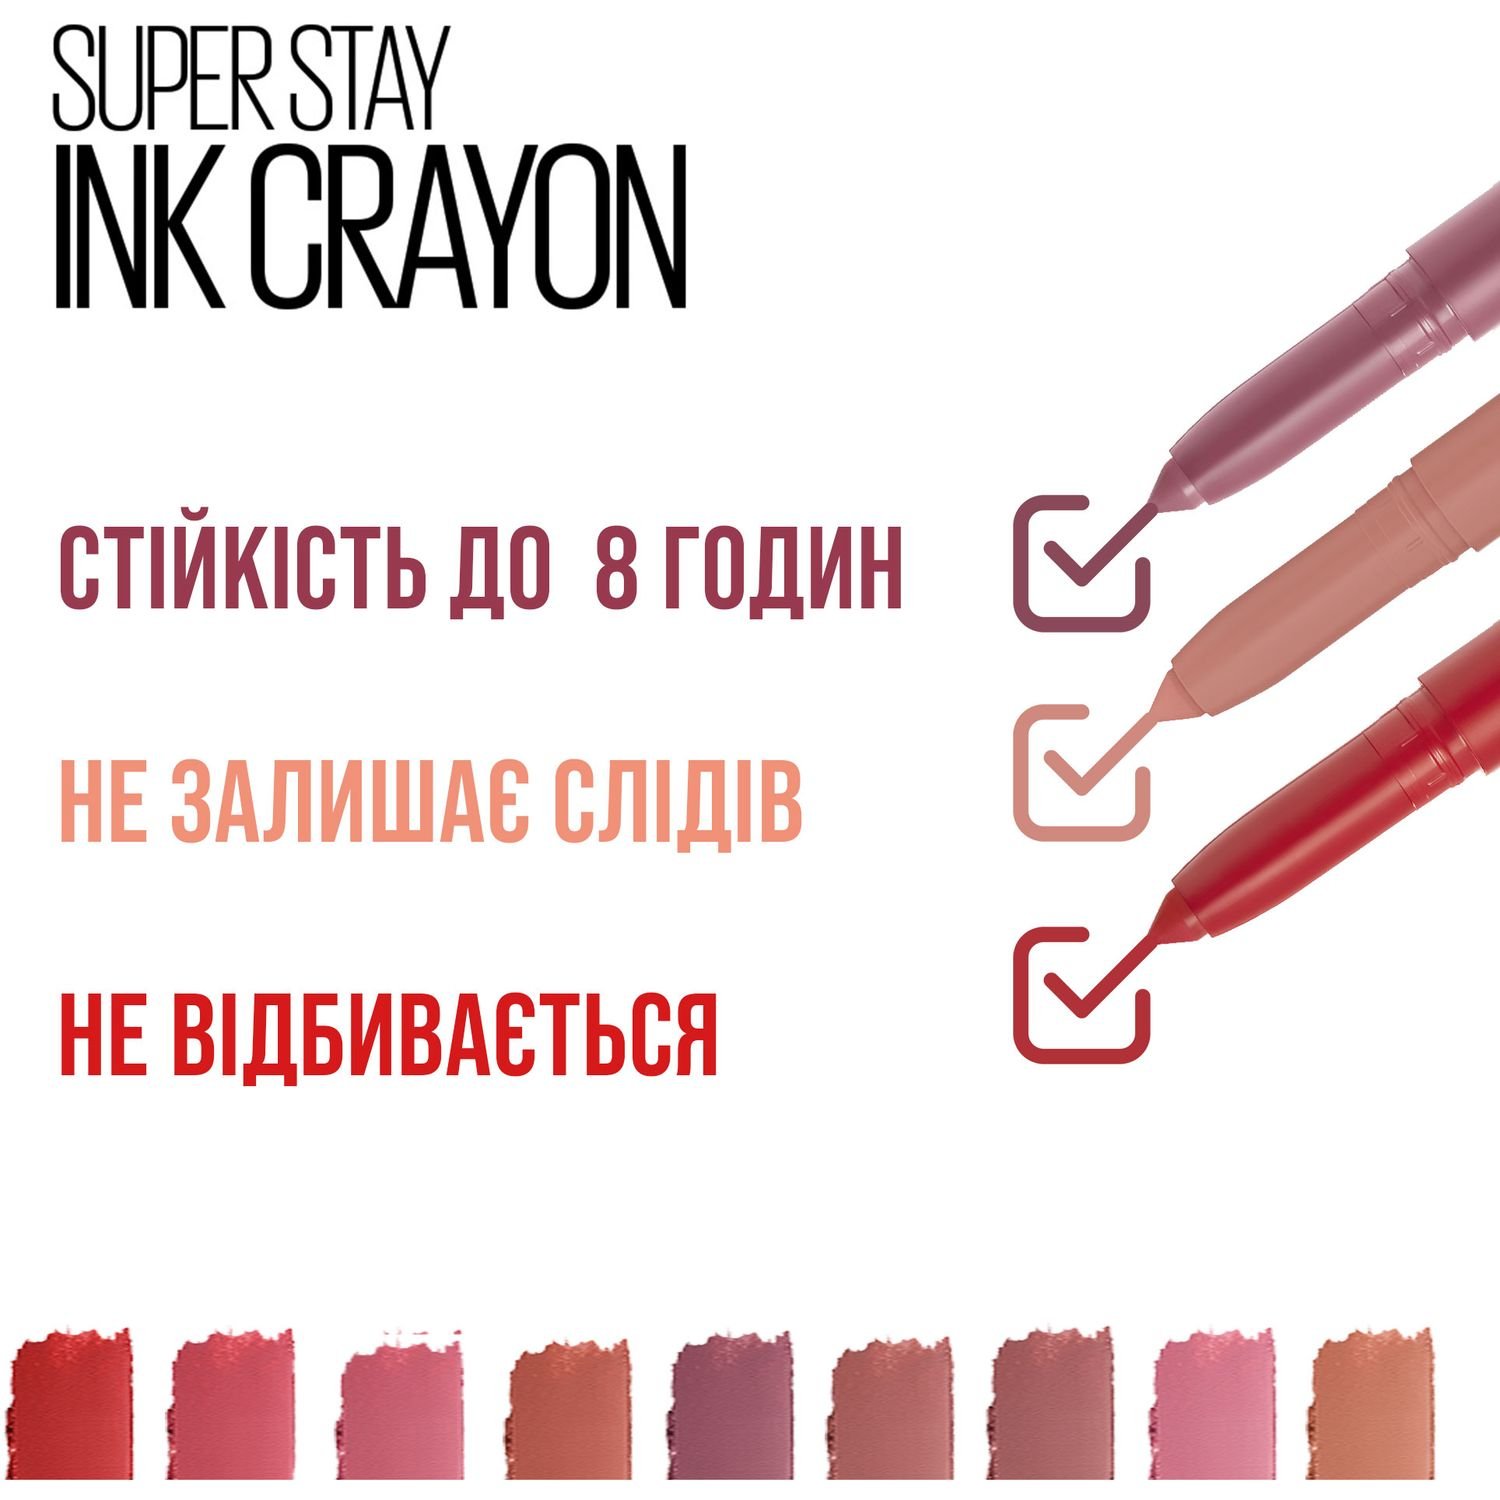 Губна помада-олівець Maybelline New York Super Stay Ink Crayon, відтінок 30 (Матовий), 2 г (B3187500) - фото 5